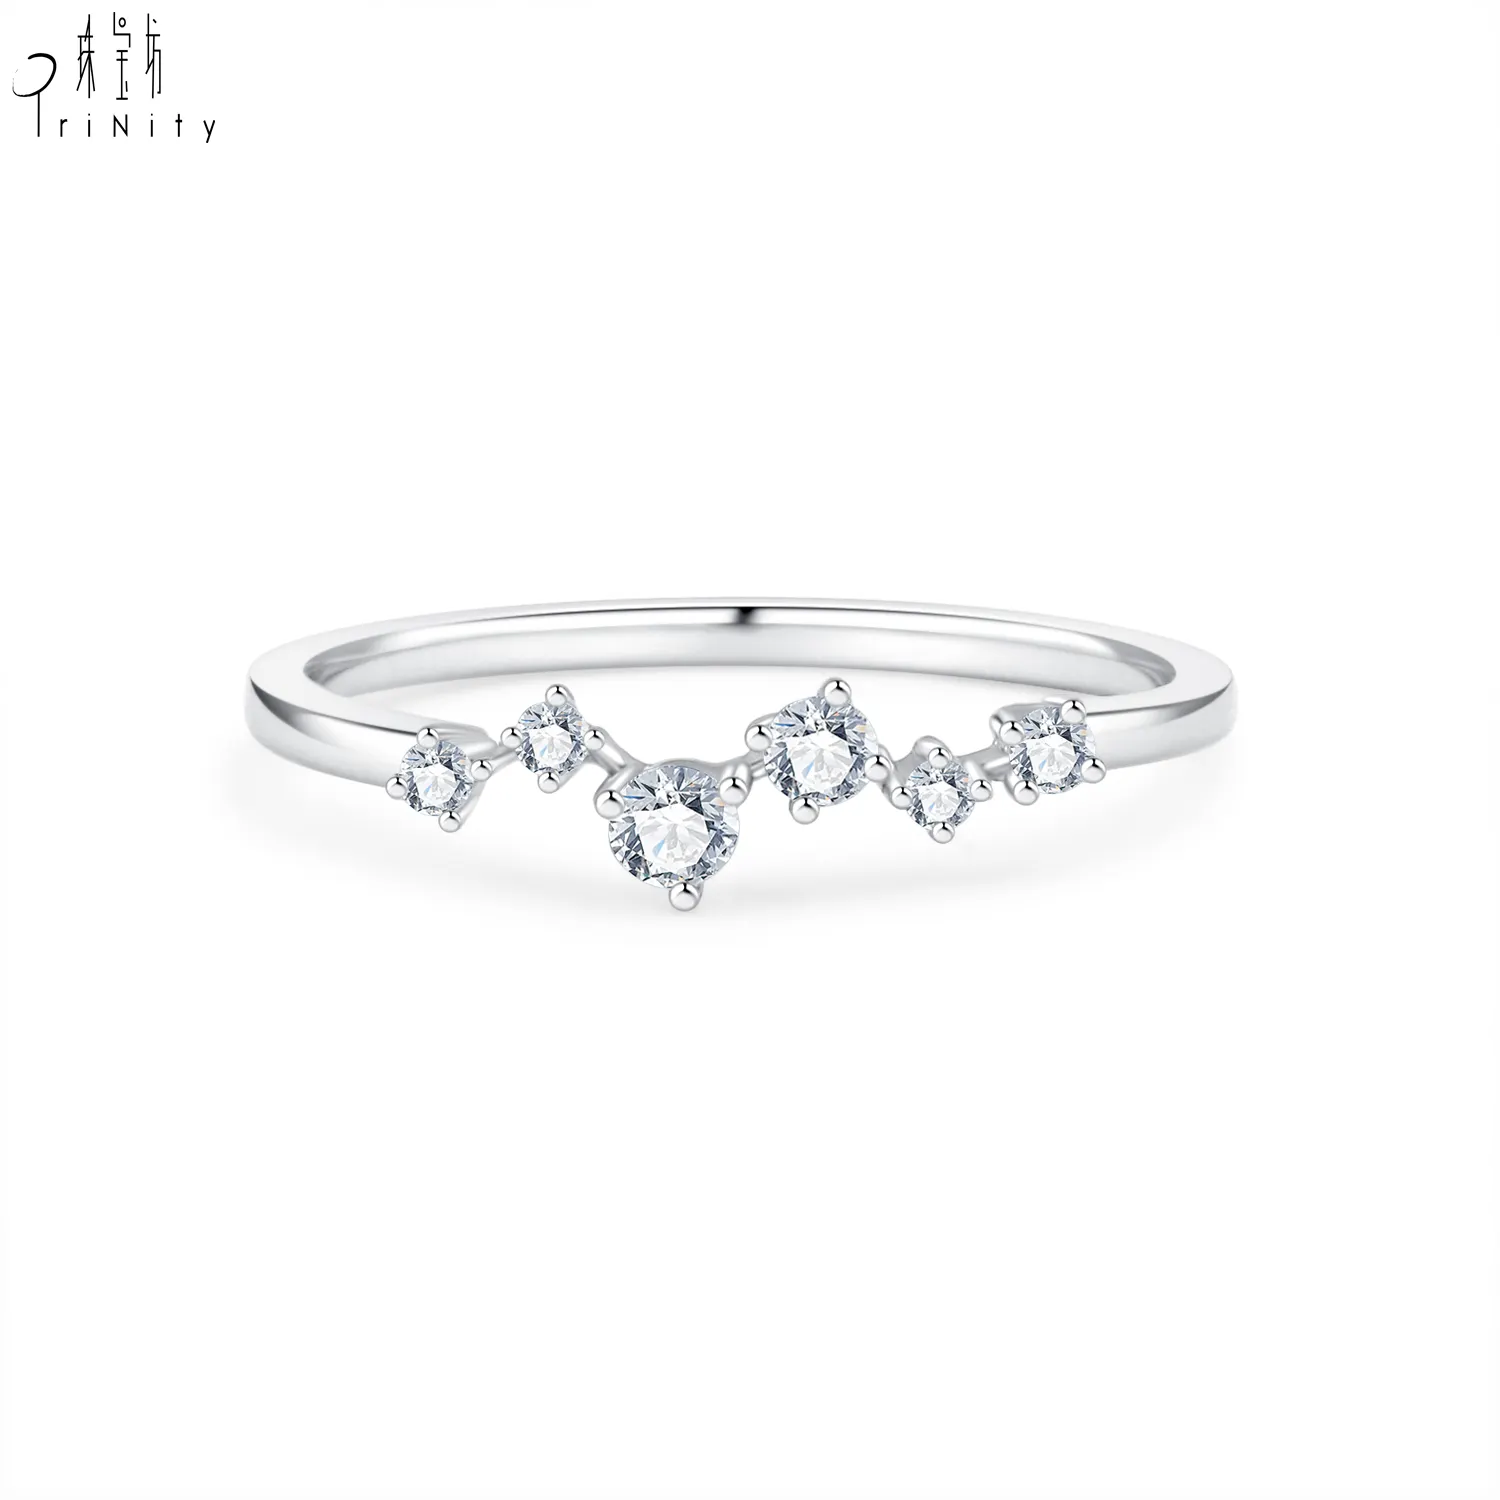 Nieuwe Aankomst Elegante Onregelmatige Vorm Ontwerp 18K Wit Goud Echte Natuurlijke Diamanten Ring Sieraden Voor Vrouwen